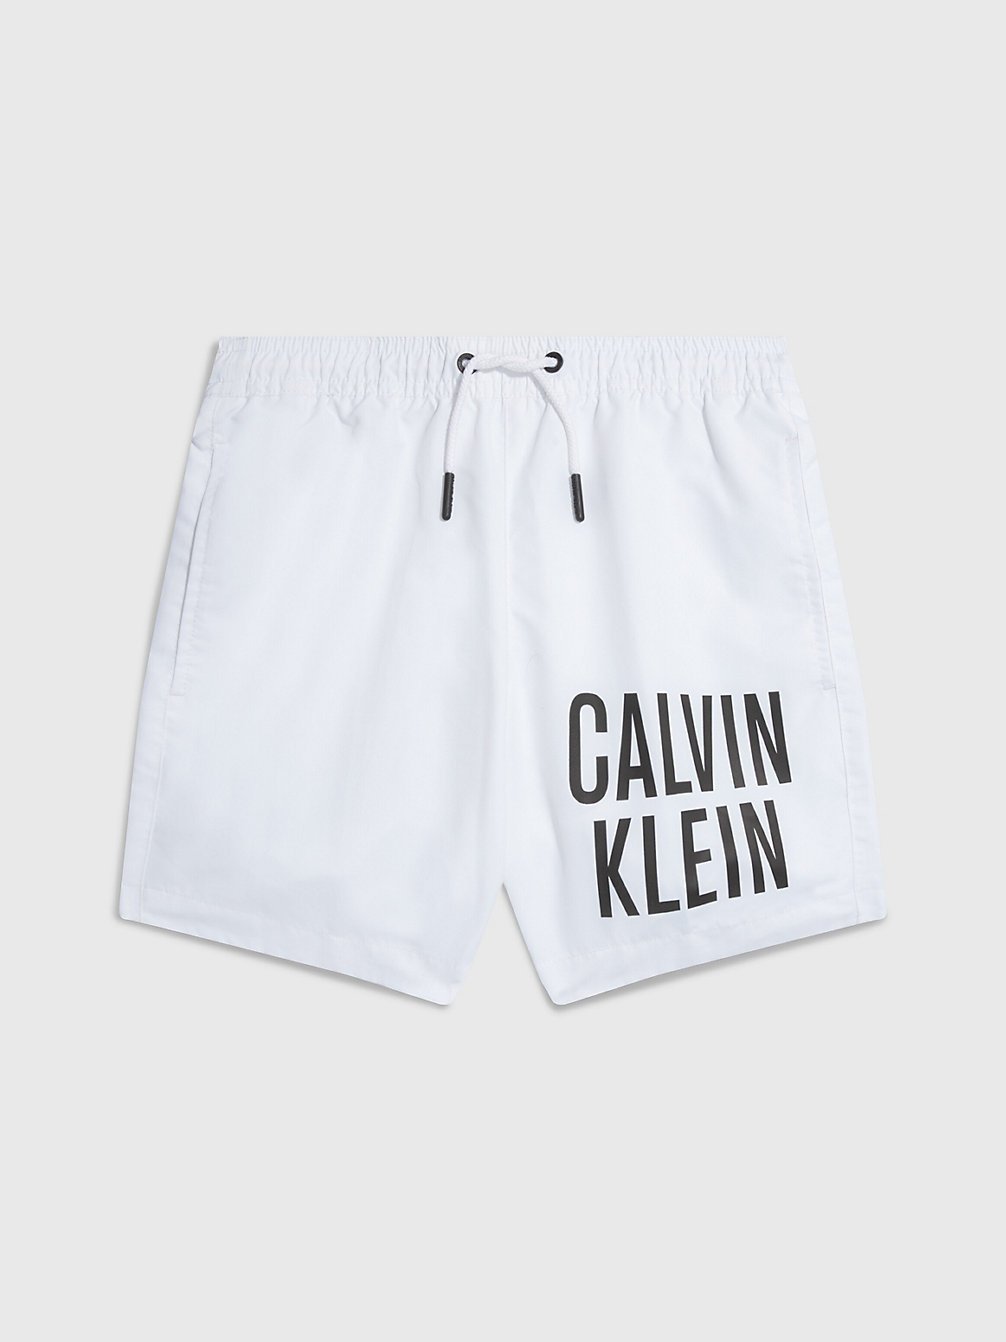 PVH CLASSIC WHITE > Chłopięce Bokserki Kąpielowe - Intense Power > undefined boys - Calvin Klein